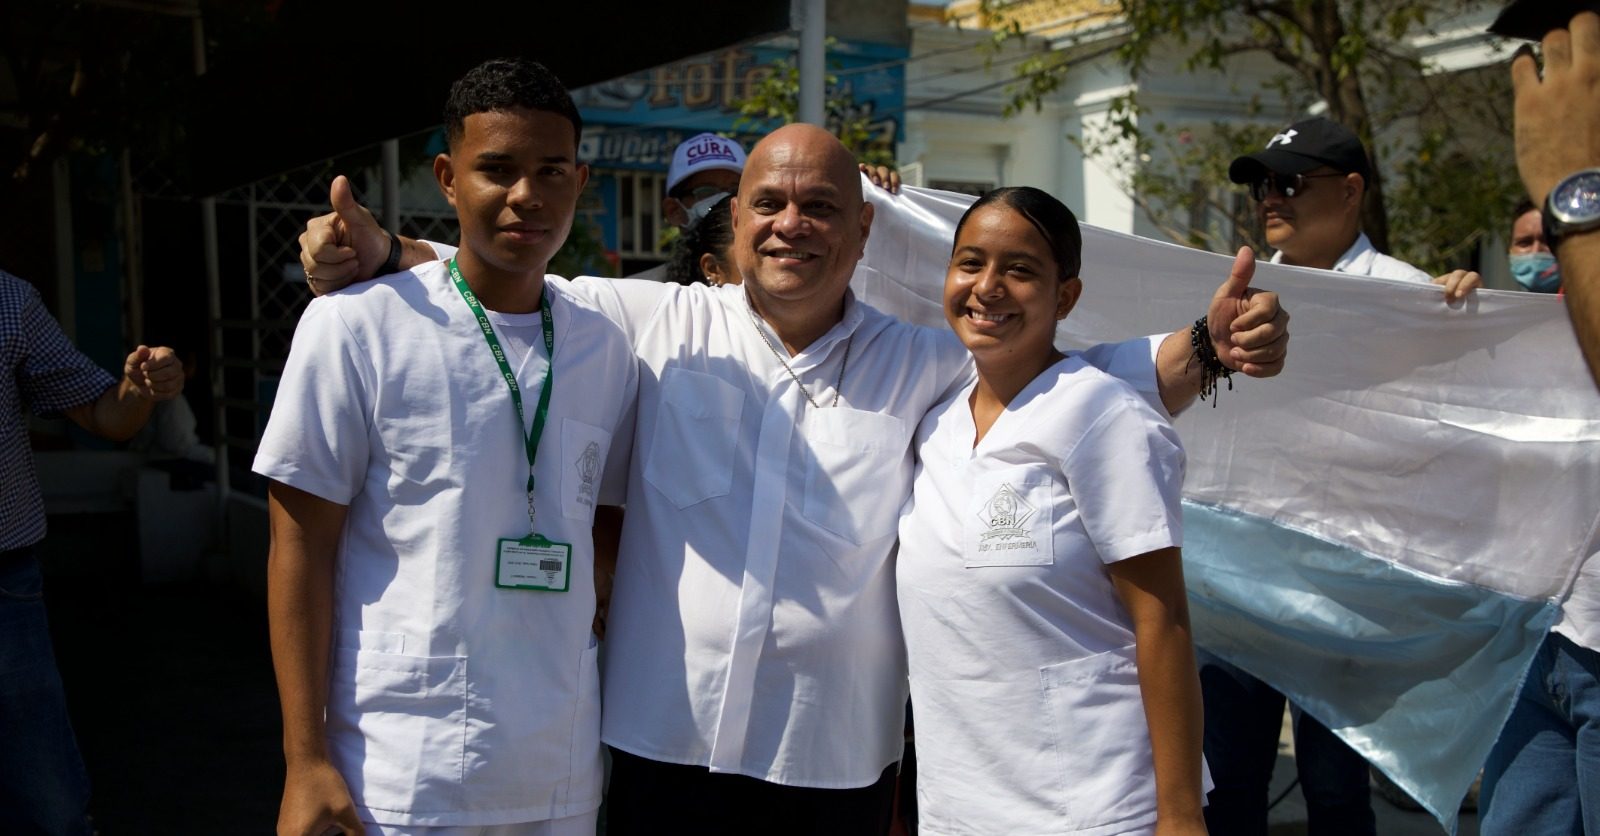 “Nuestros jóvenes en conflicto, del puñal y el arma a la educación y el trabajo digno”: José Alfredo Ordoñez